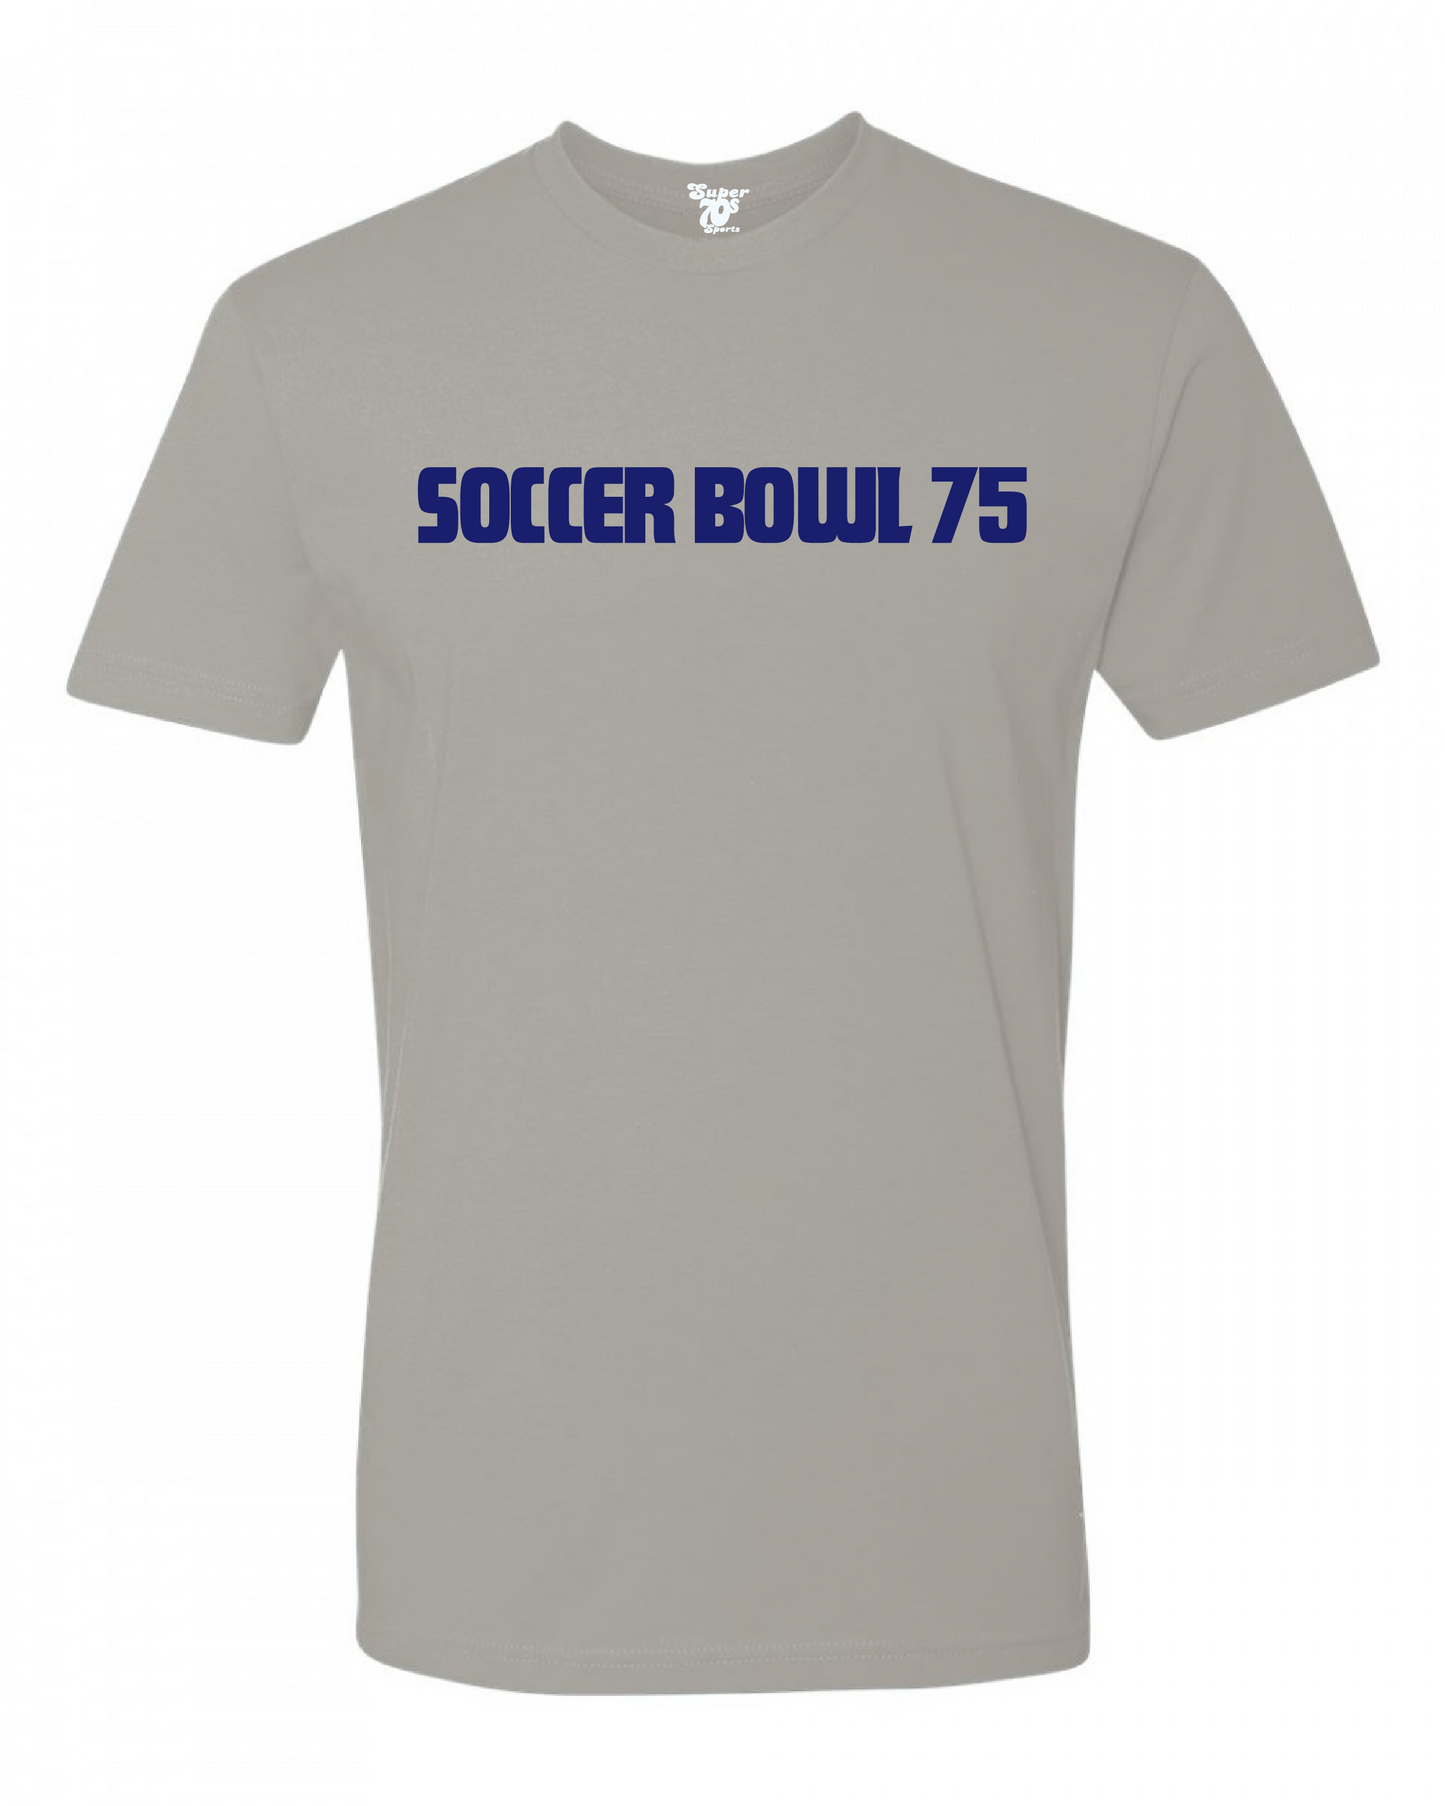 Soccer Bowl '75 Tee